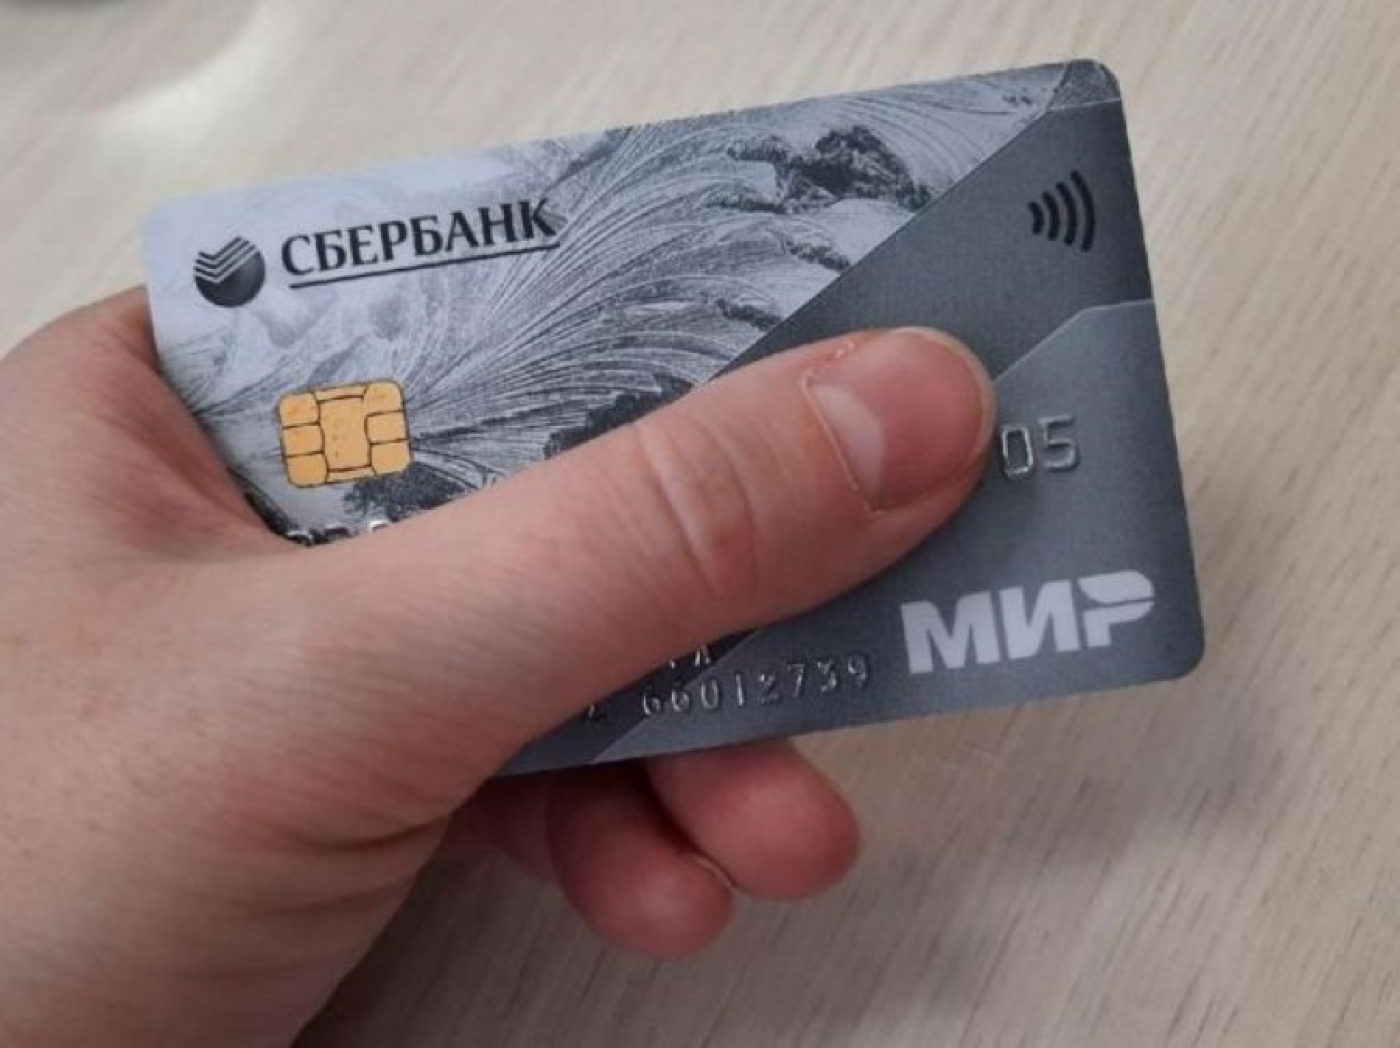 В Минске подростки нашли банковскую карту и пошли по магазинам